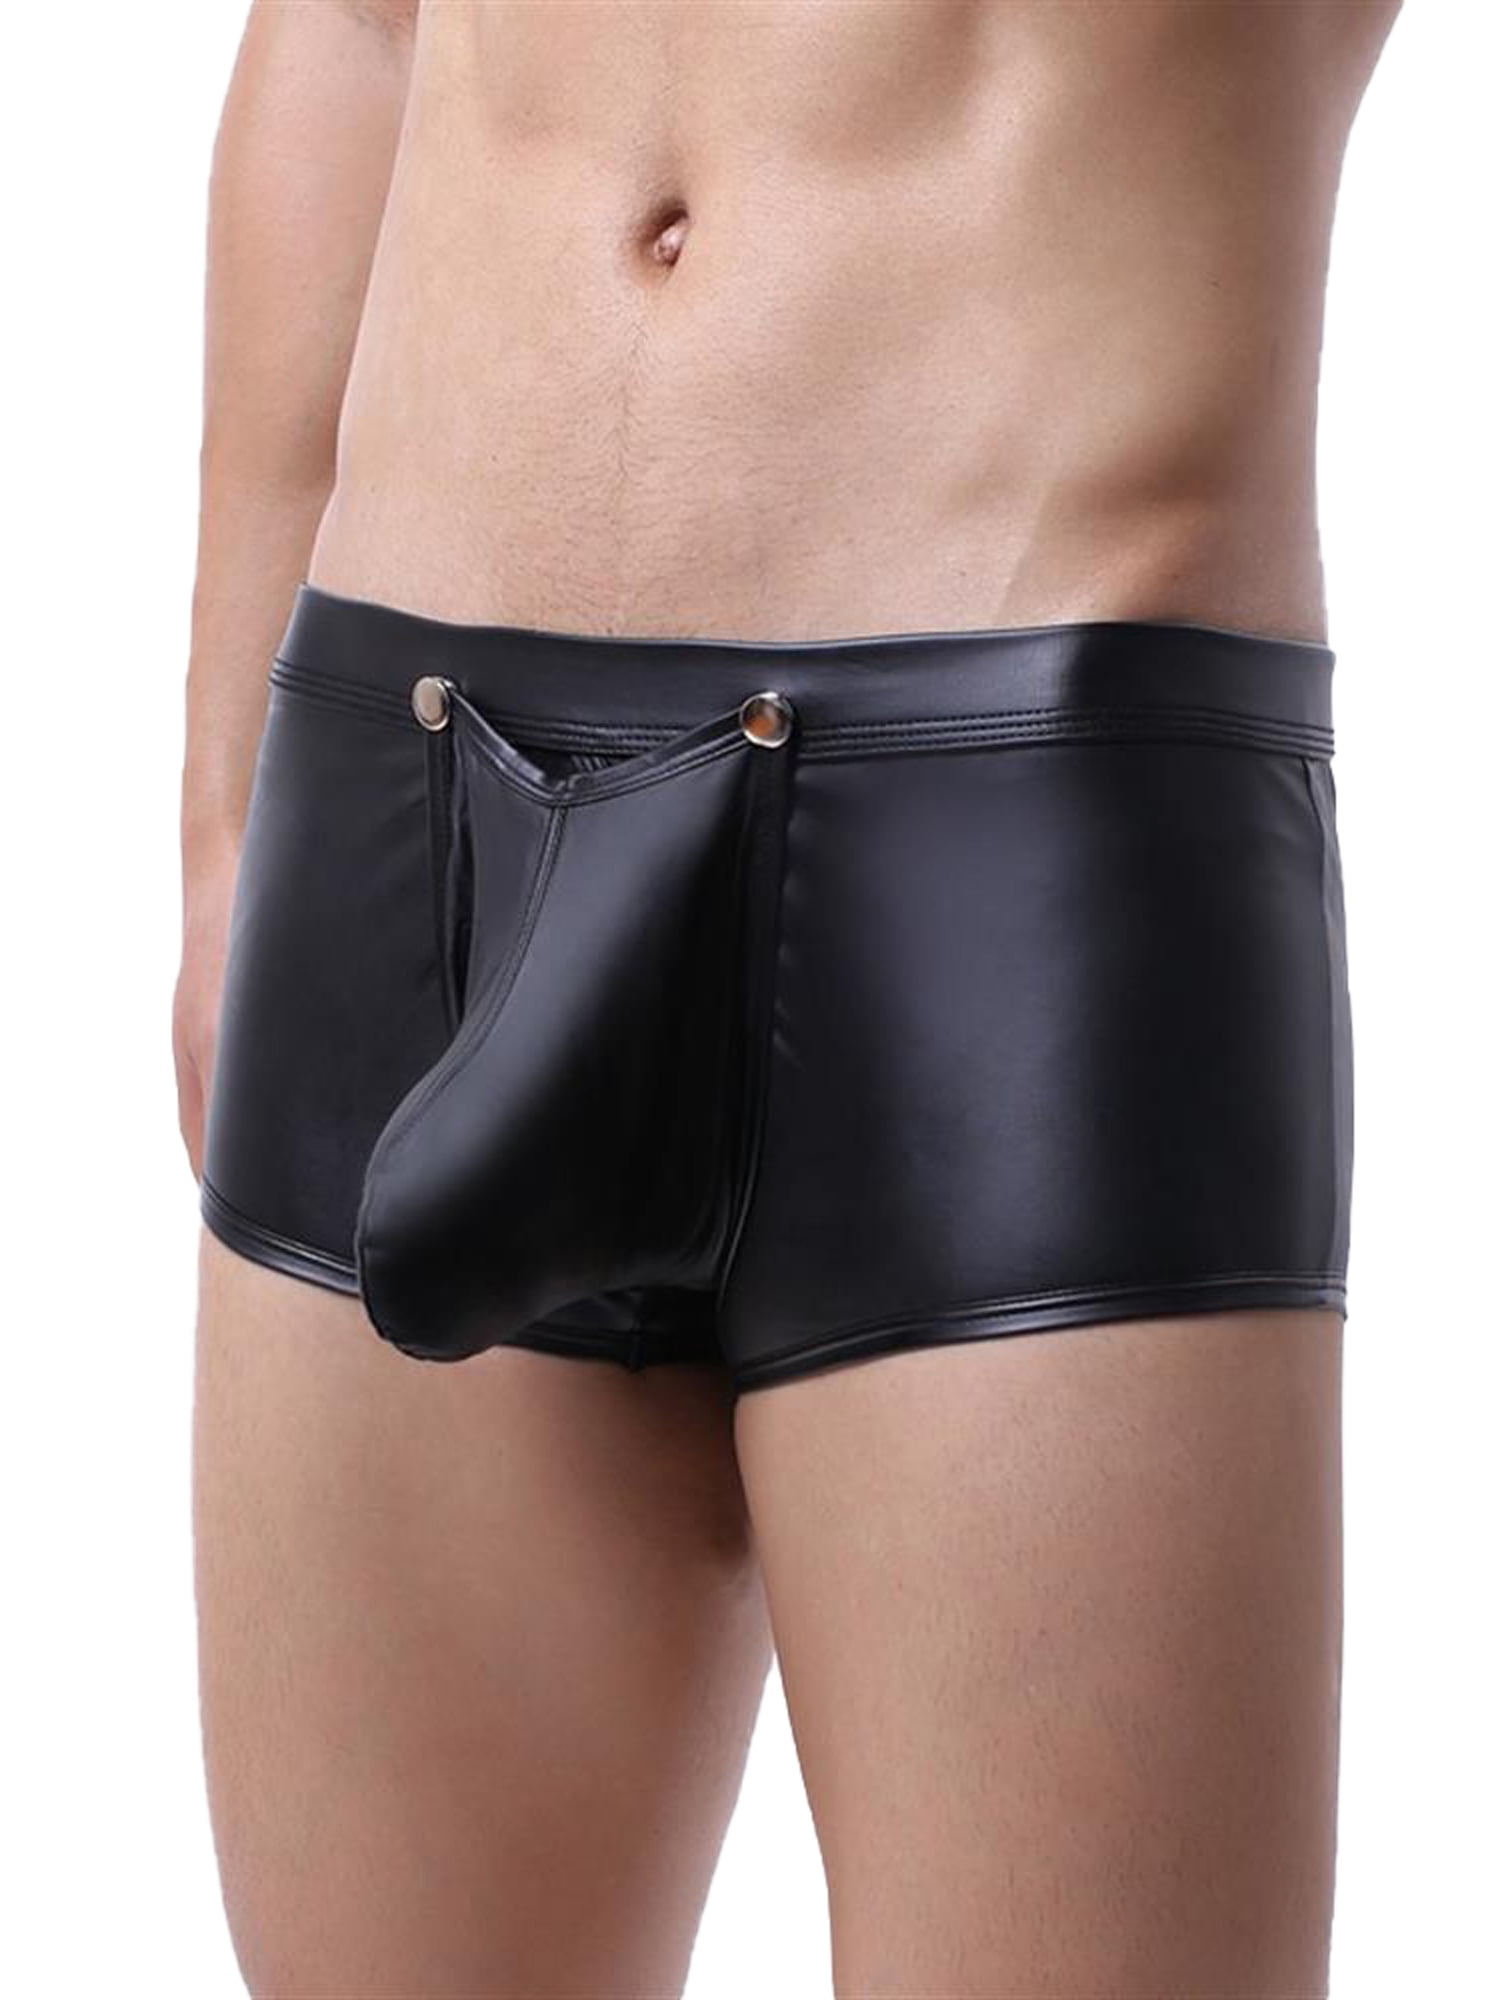 Mens Shiny Leather Underwear Trunks Pouch Pants Shorts Boxer Briefs Lingerie 